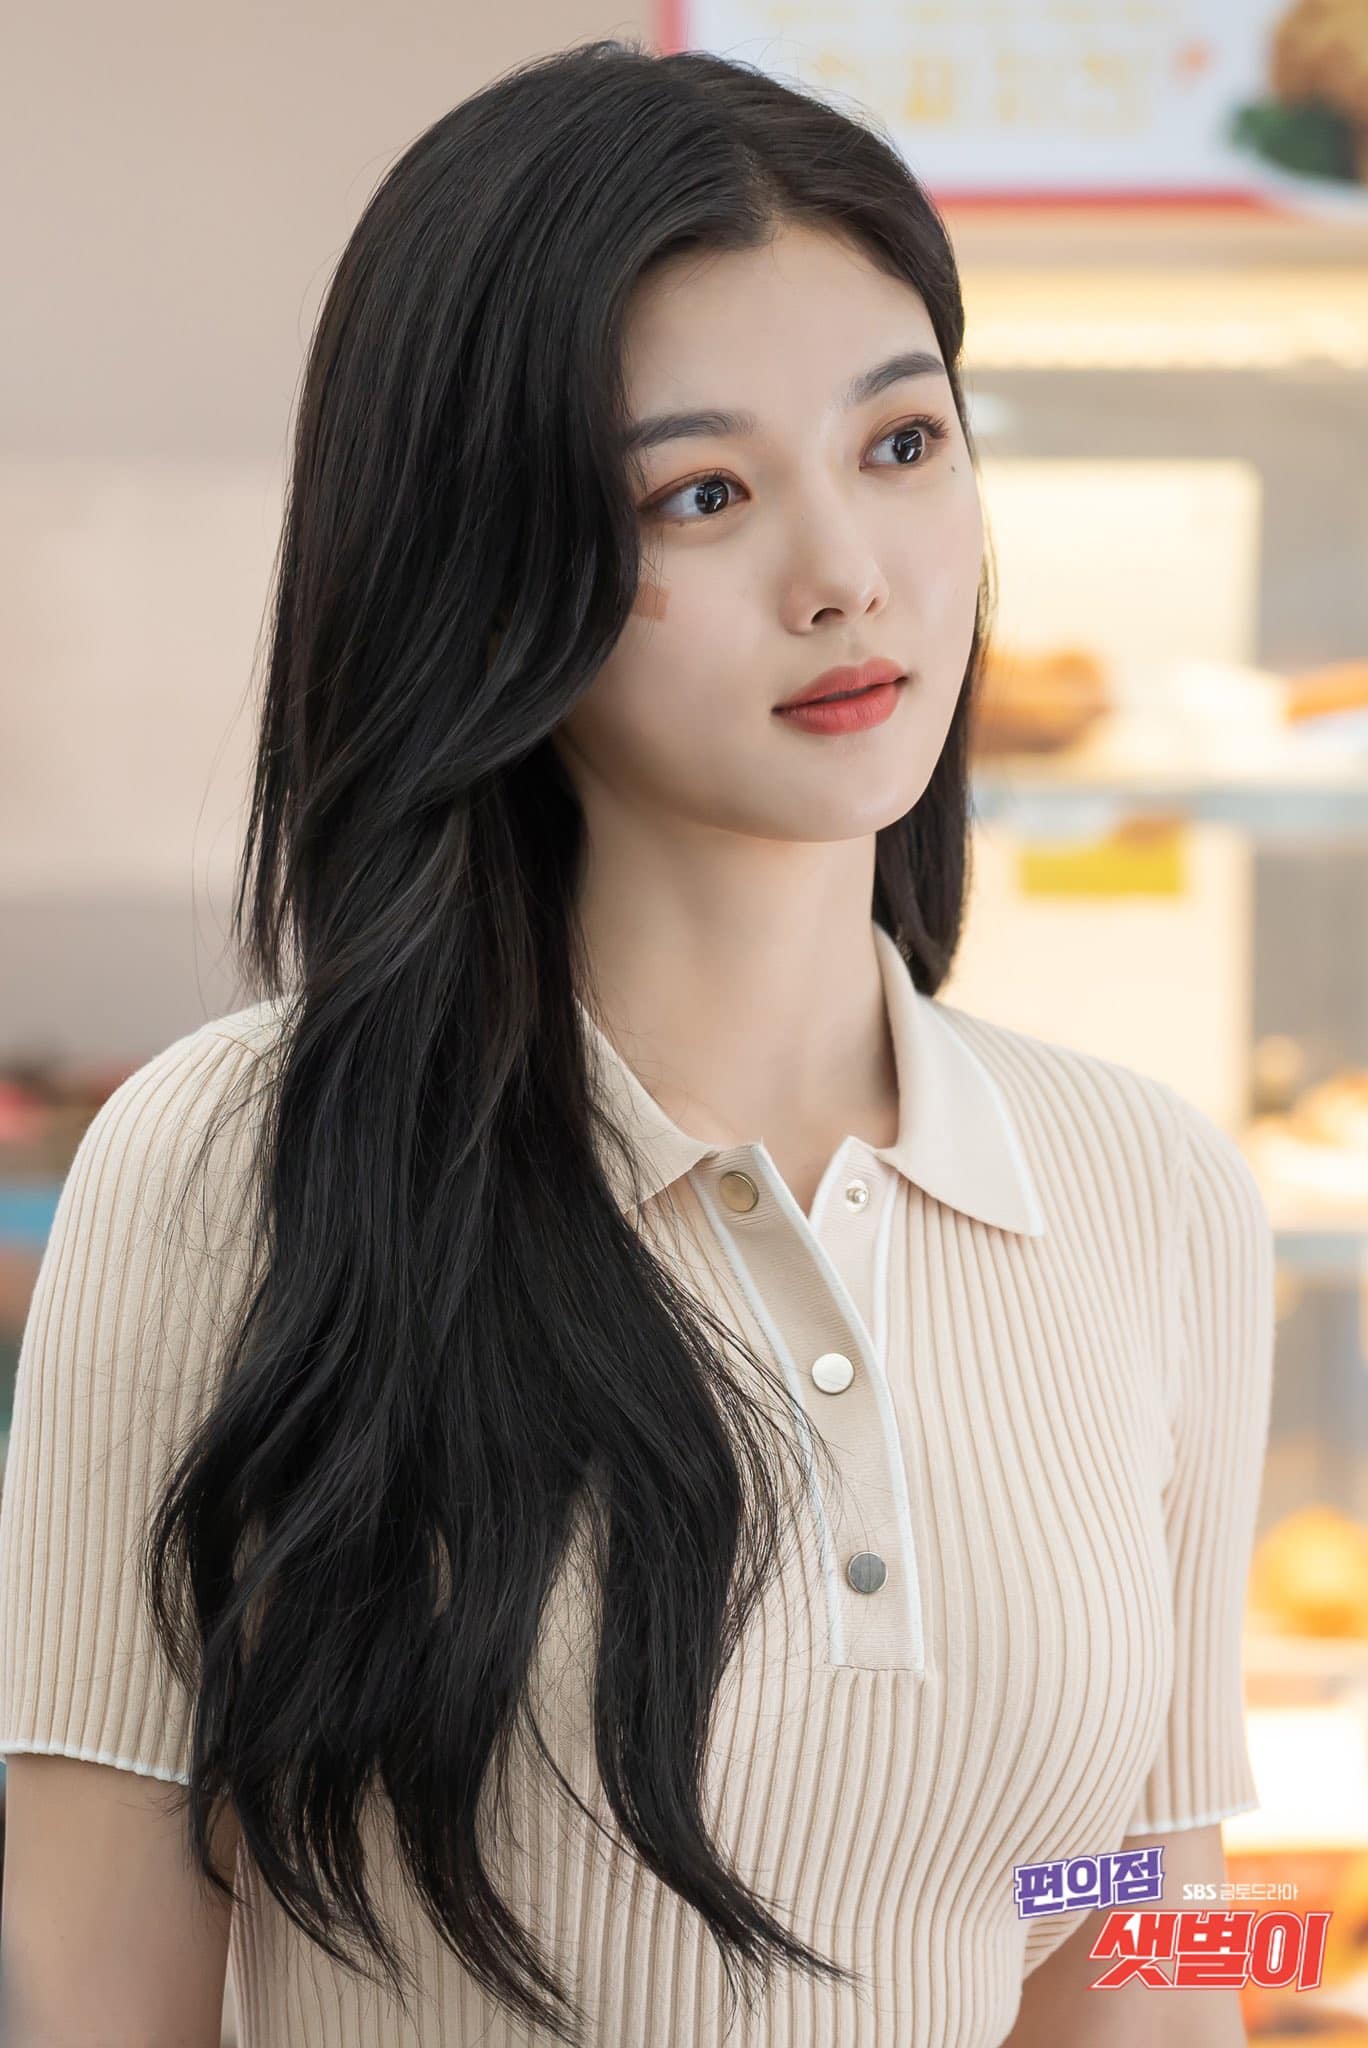 Chọn váy siêu ngắn khi làm việc ở siêu thị, "bé gái xinh nhất Hàn Quốc" nhận phản ứng - 6